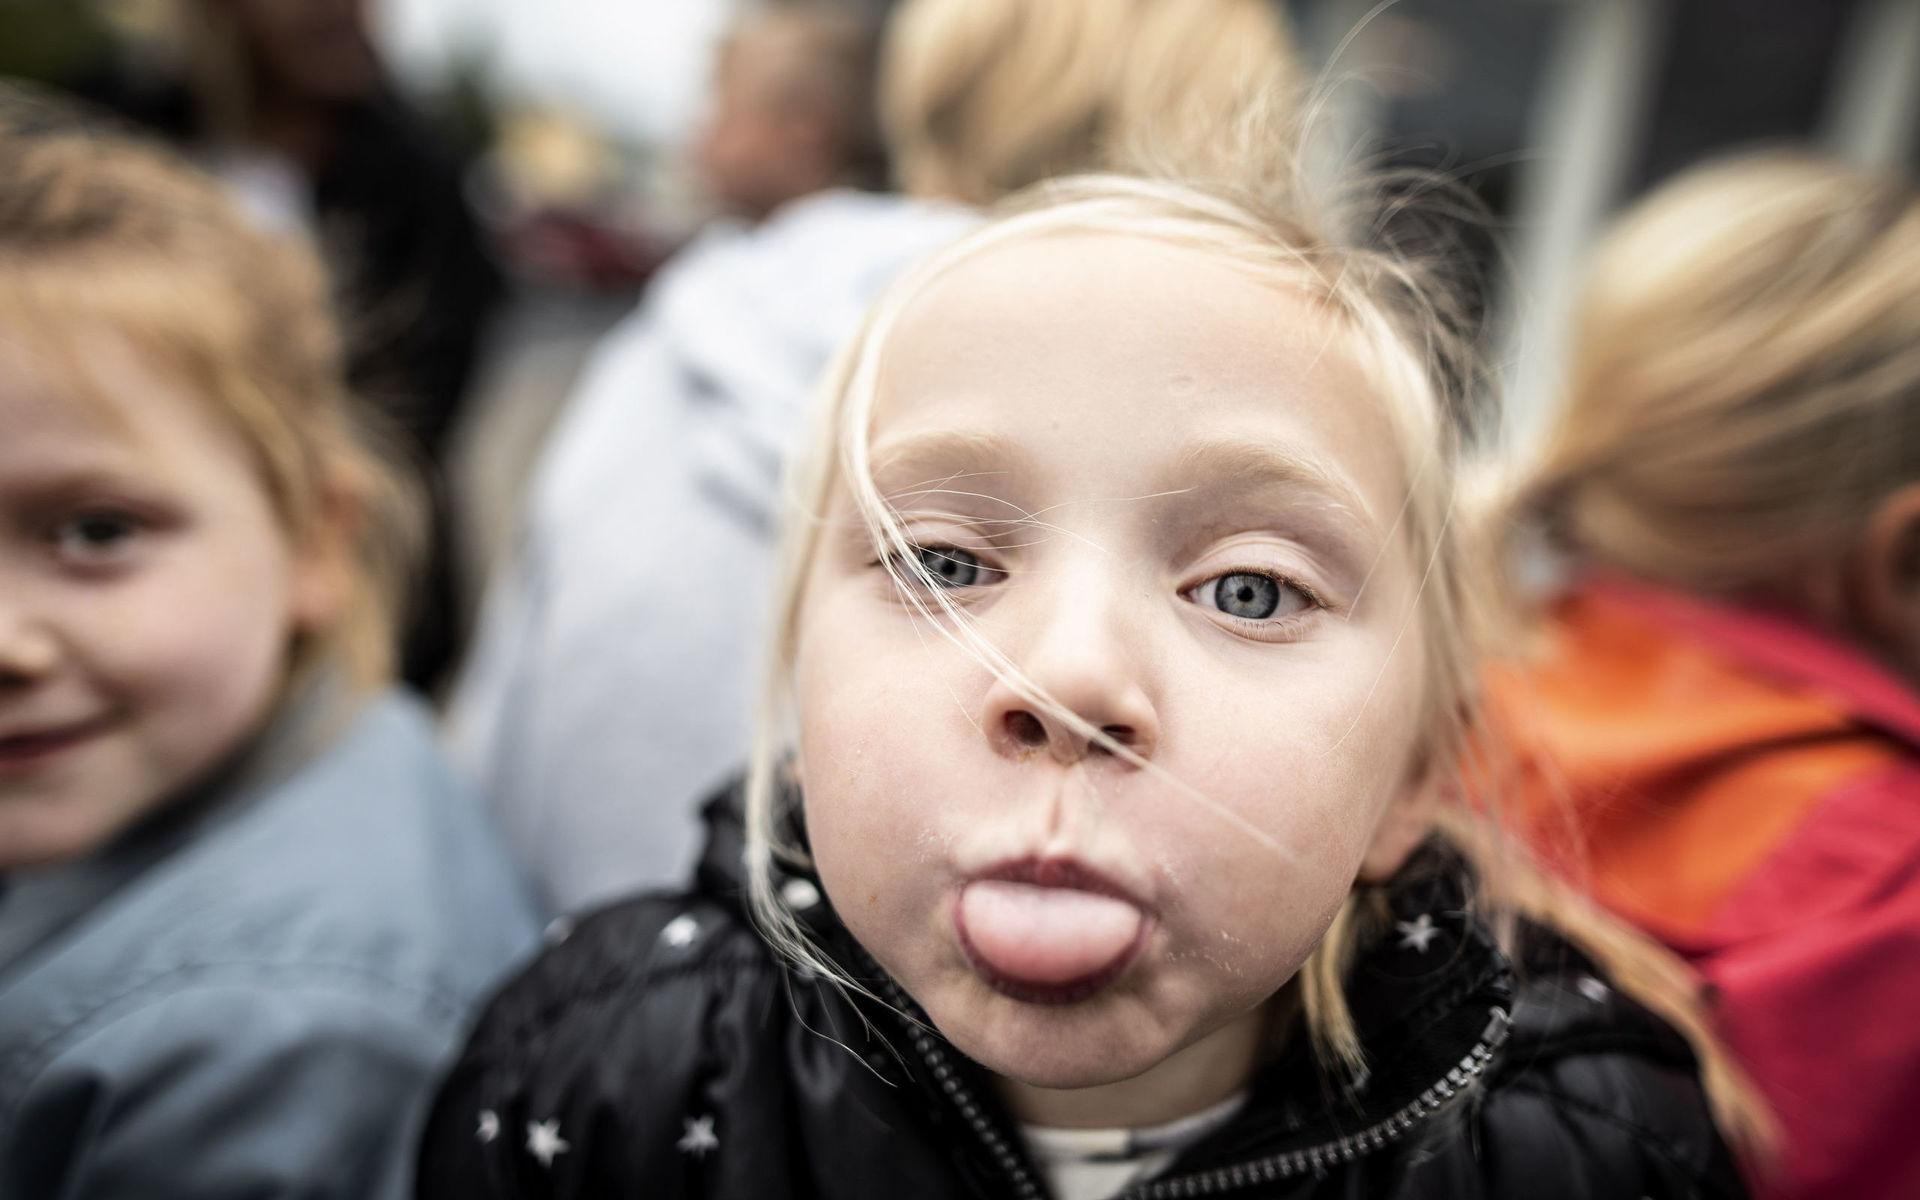 Glada miner. Konst inspirerar till både skratt och lek. Linnea Rosvall, 5år, tillhör Kärraskolans förskola.